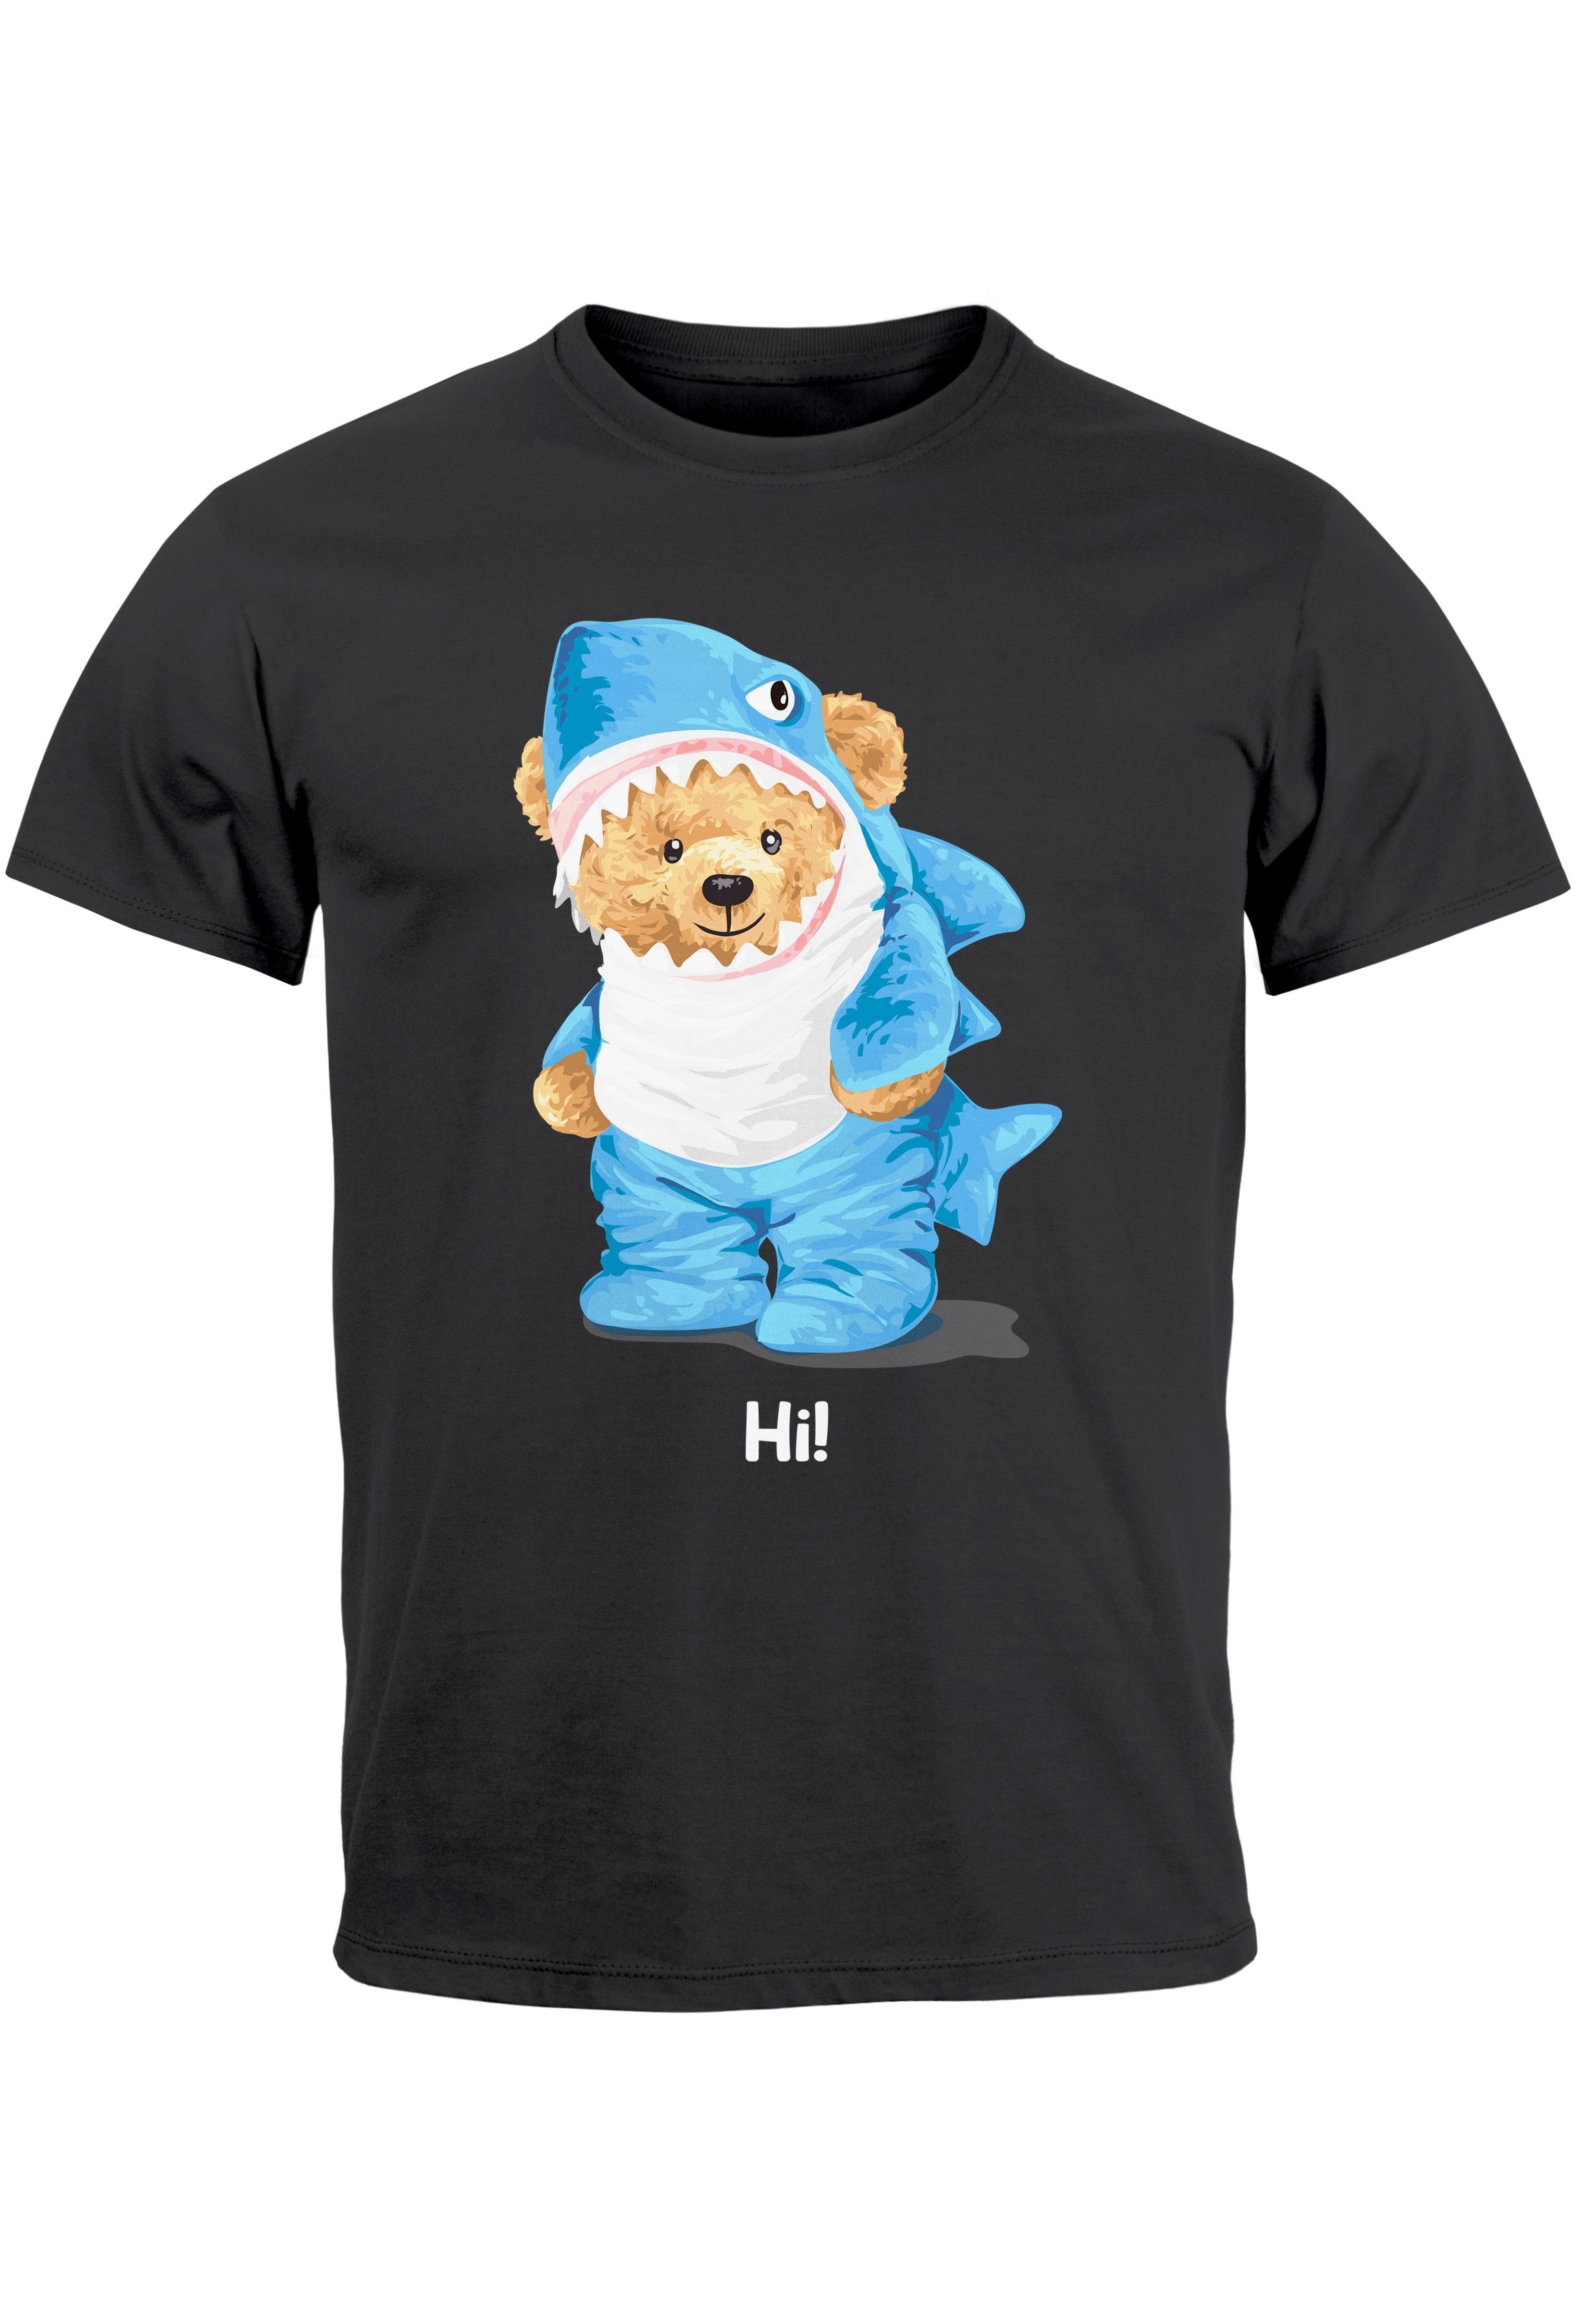 Print-Shirt Herren T-Shirt Parodie Fashi Witz Aufdruck dunkelgrau Hi Teddy Neverless Bär Hai Print mit Printshirt